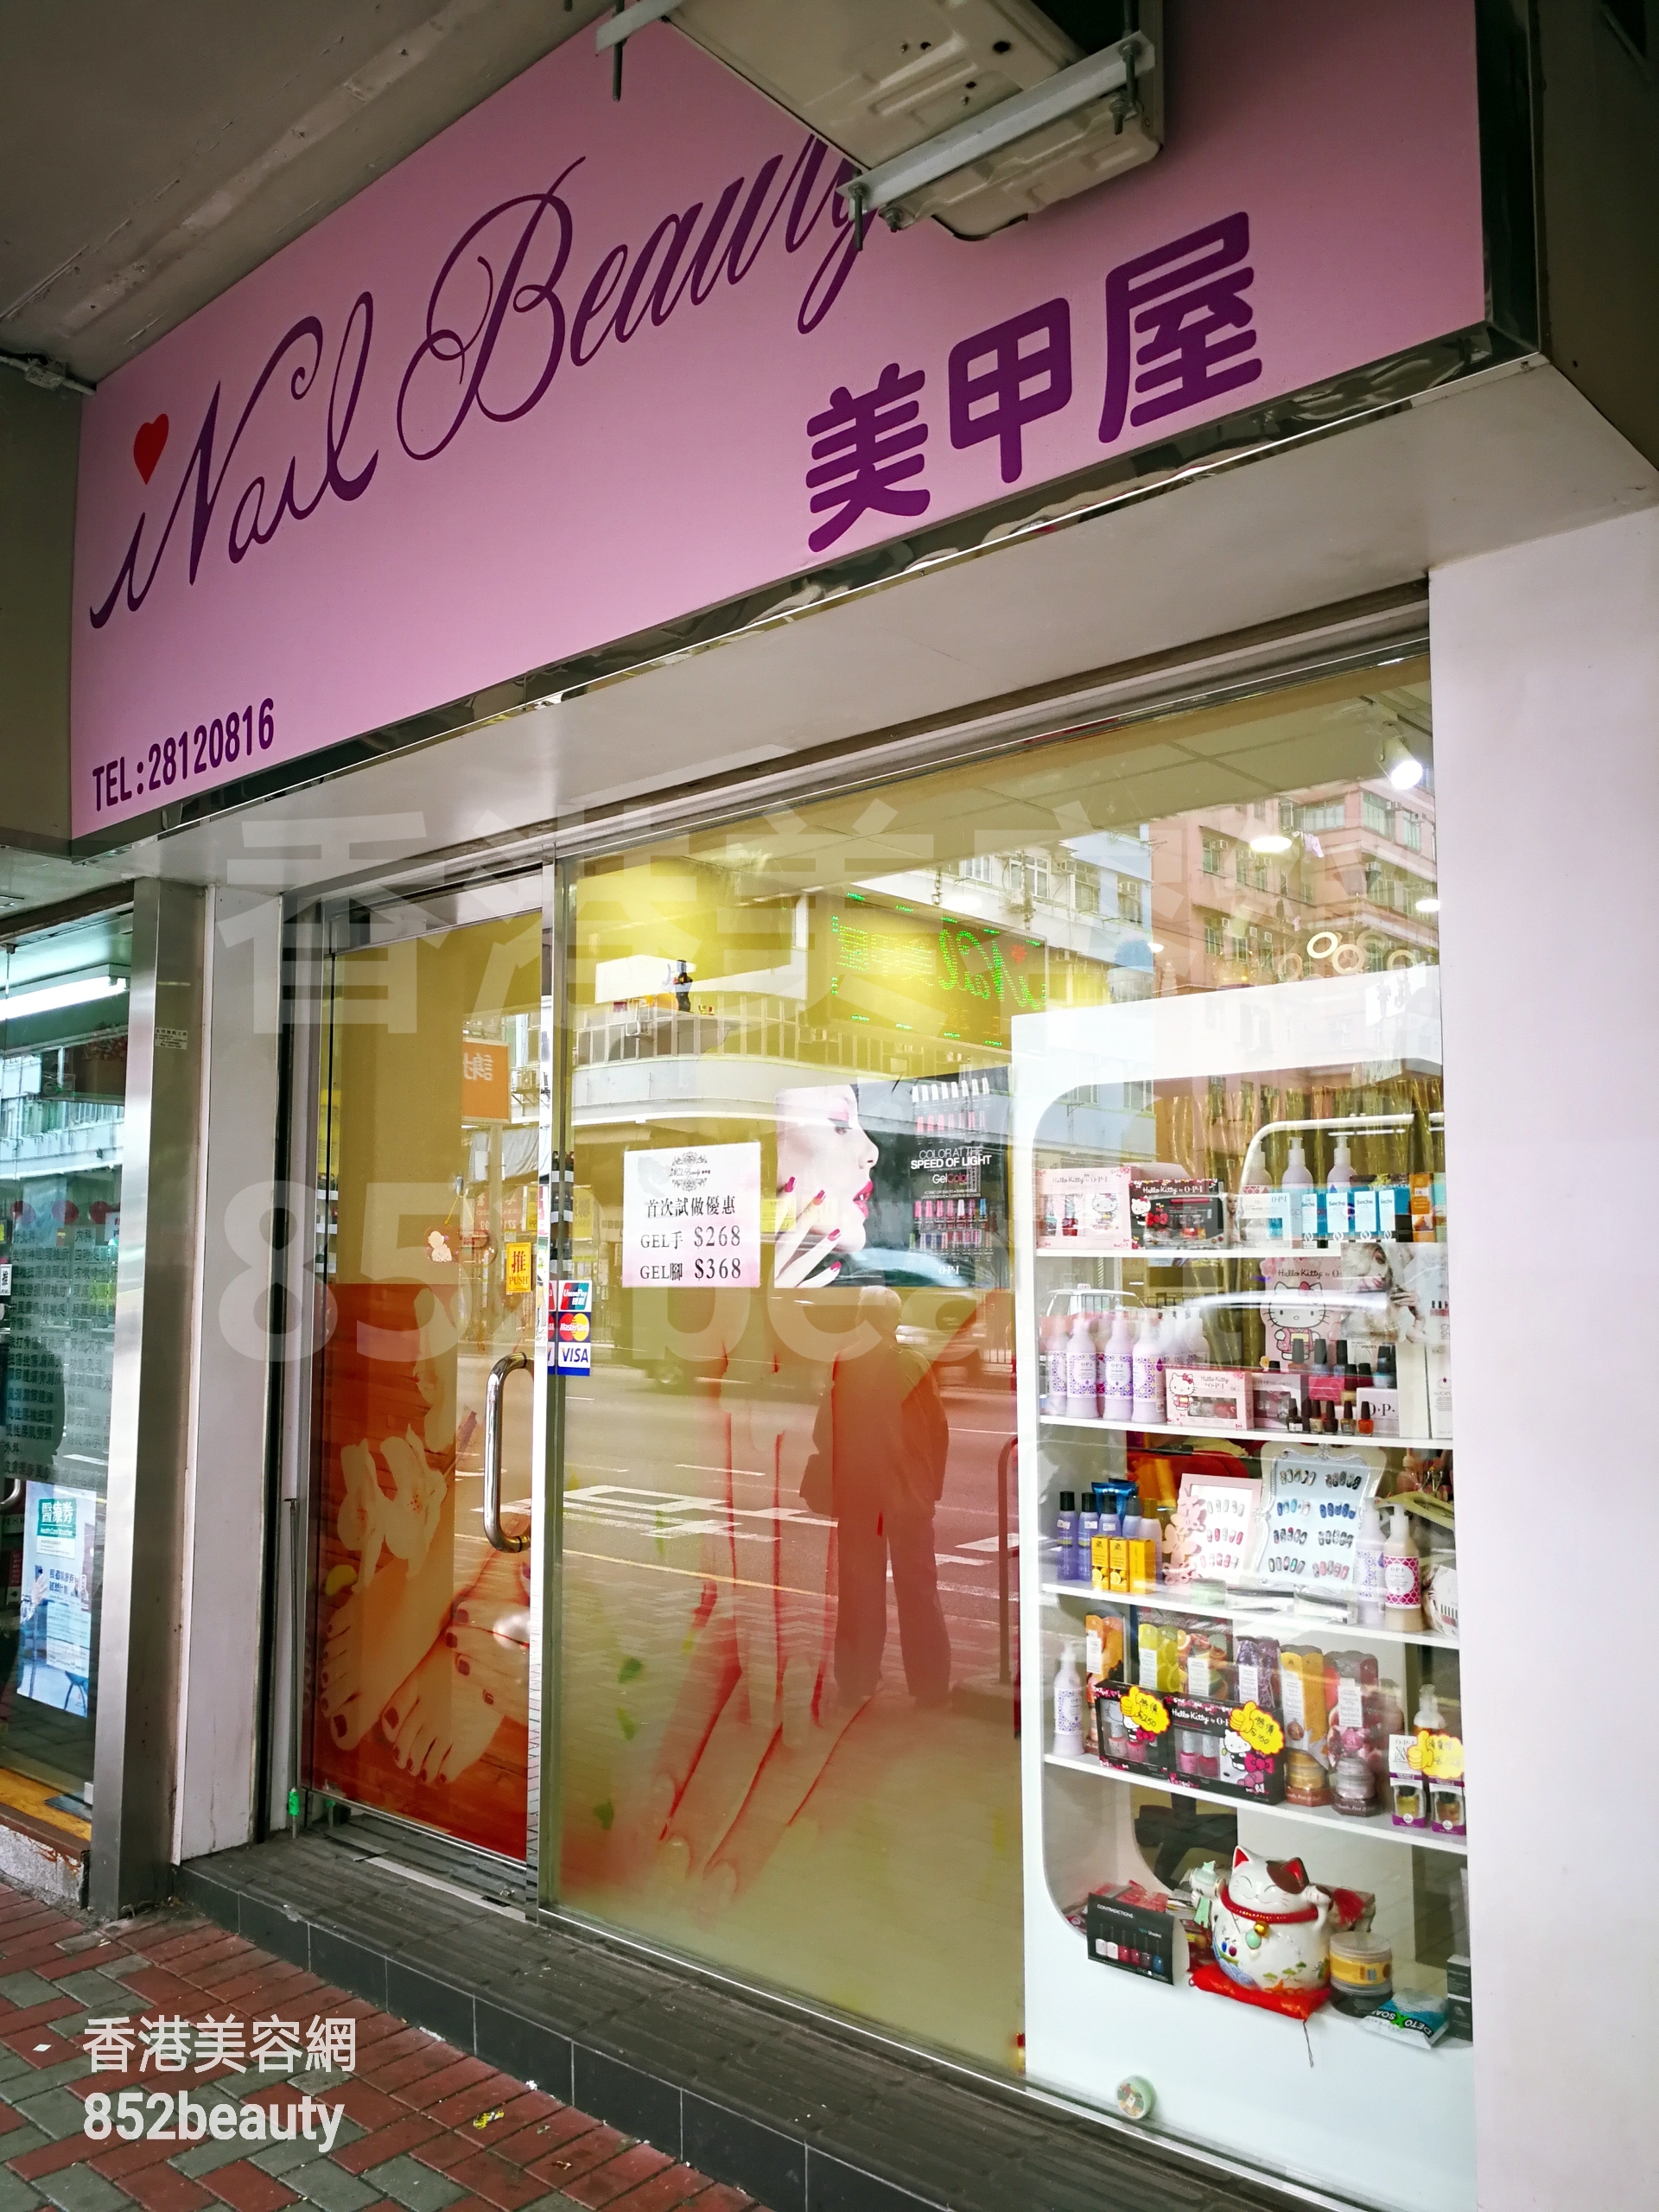 香港美容網 Hong Kong Beauty Salon 美容院 / 美容師: Nail Beauty 美甲屋